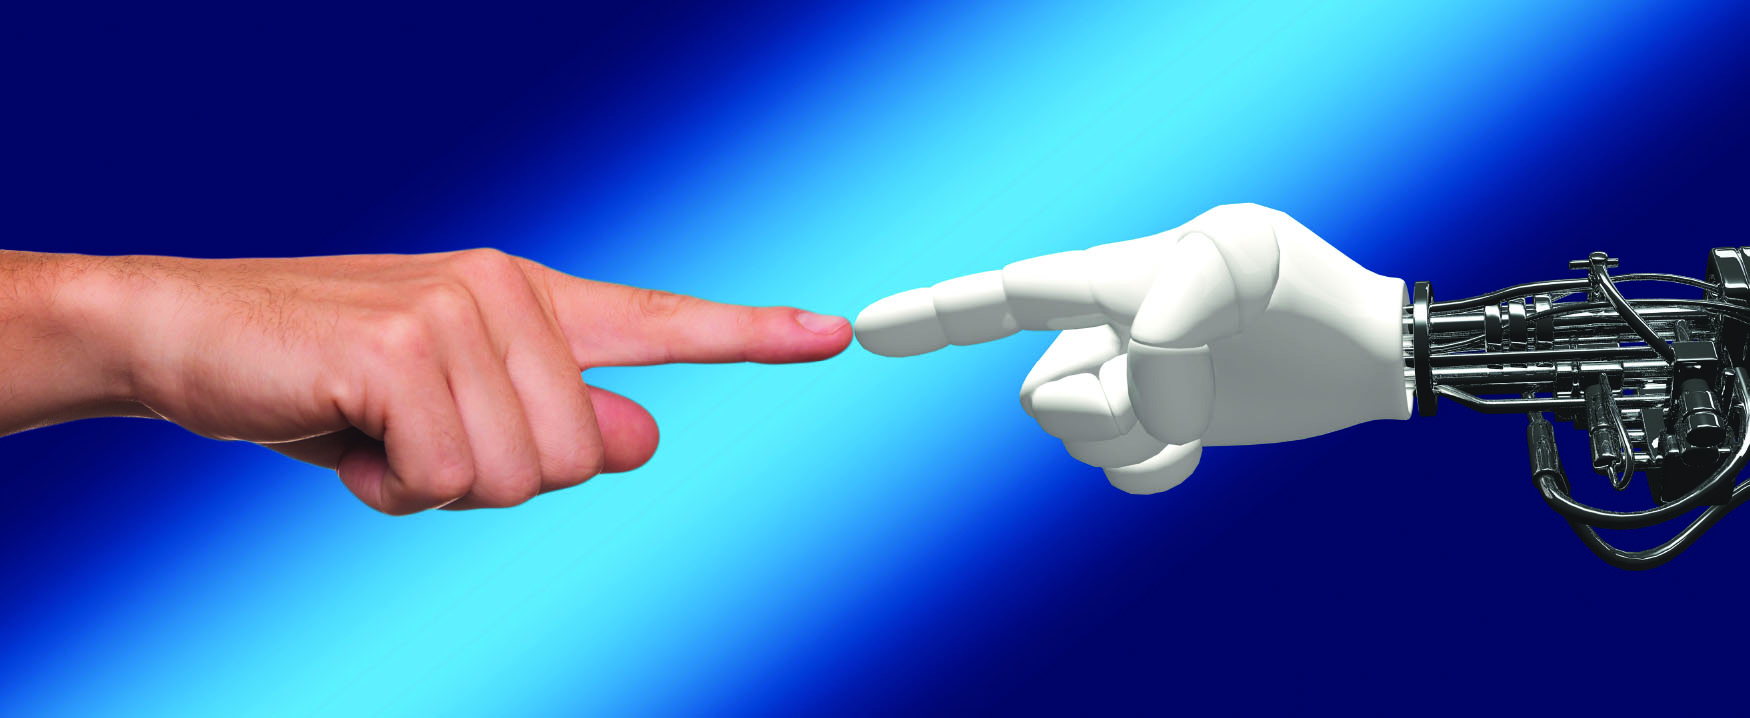 Cette image montre une main humaine à gauche et une main de robot à droite. Leurs index se touchent au milieu.